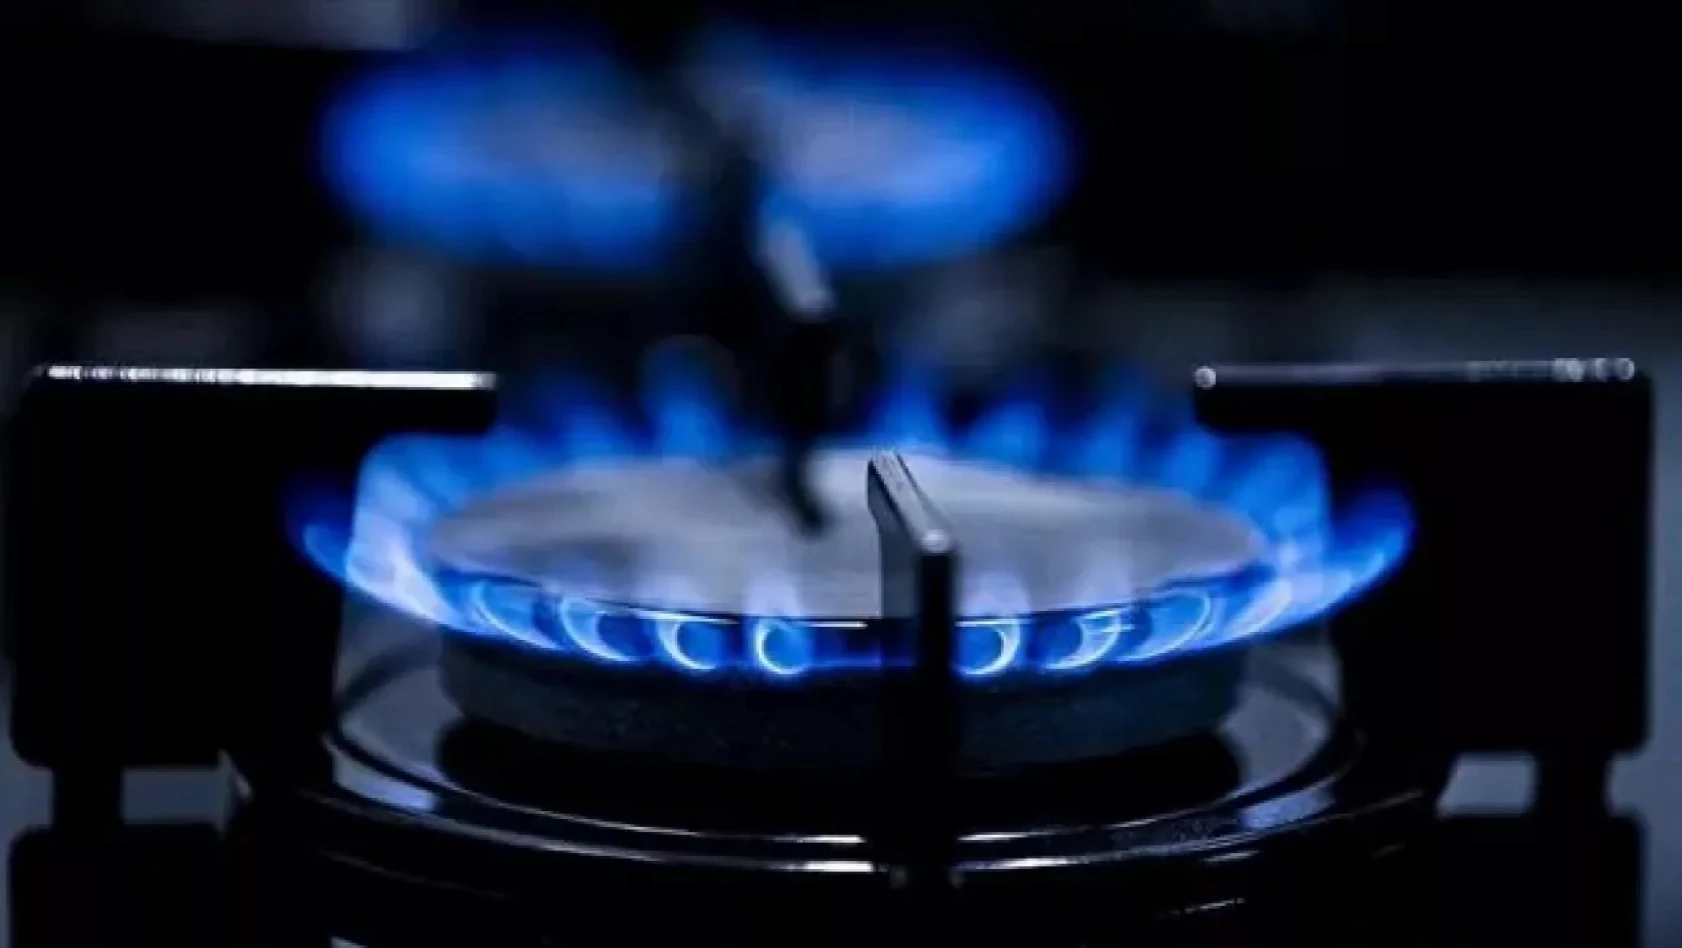 Ücretsiz doğal gazın detayları belli oldu